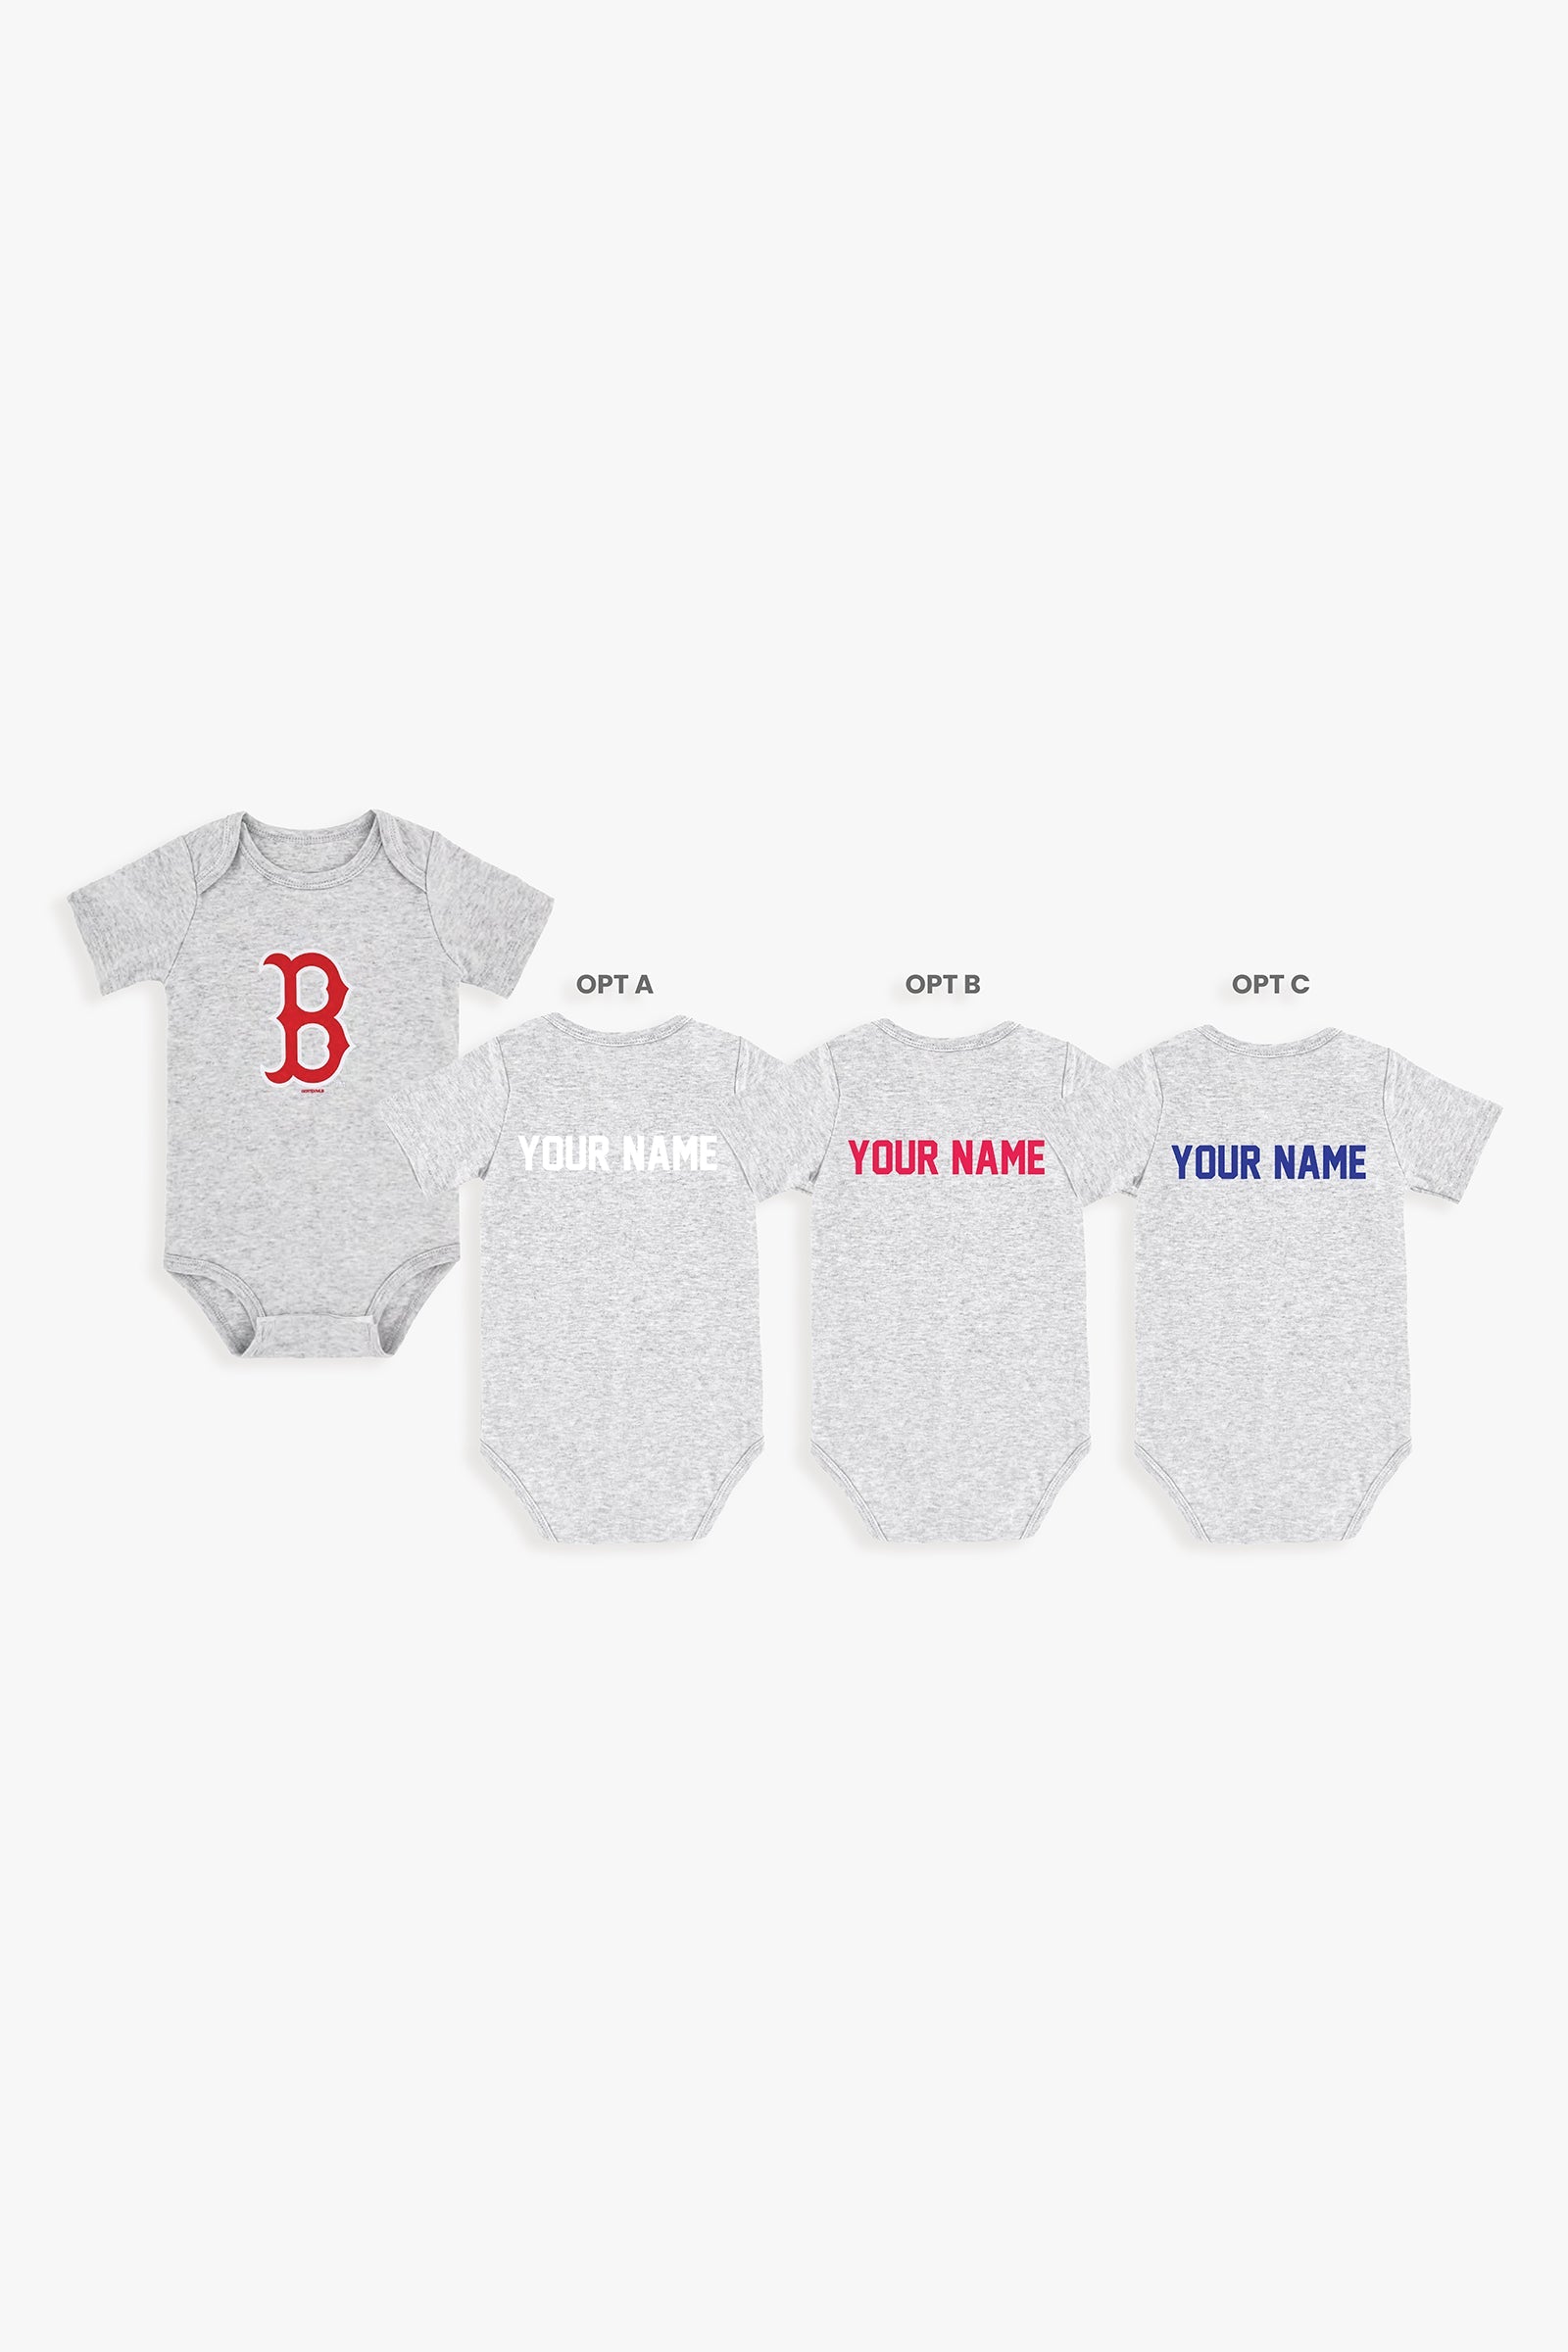 Gertex Customizable MLB Baby Onesie Bodysuit in Grey (9-12 Months)